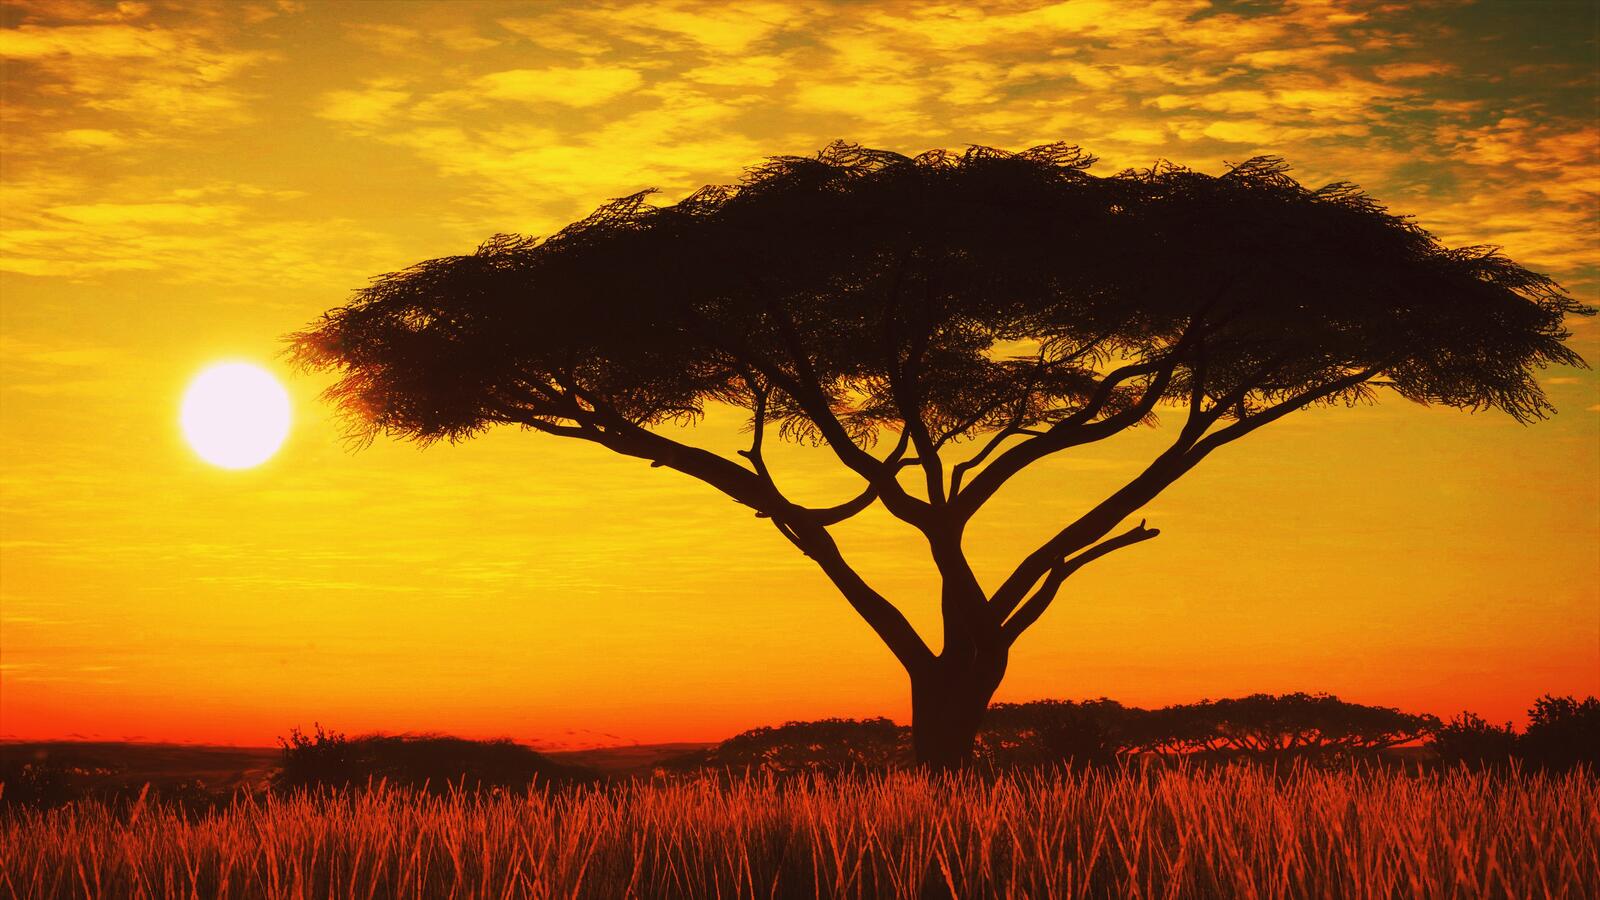 Wallpapers Savana tree sunset on the desktop